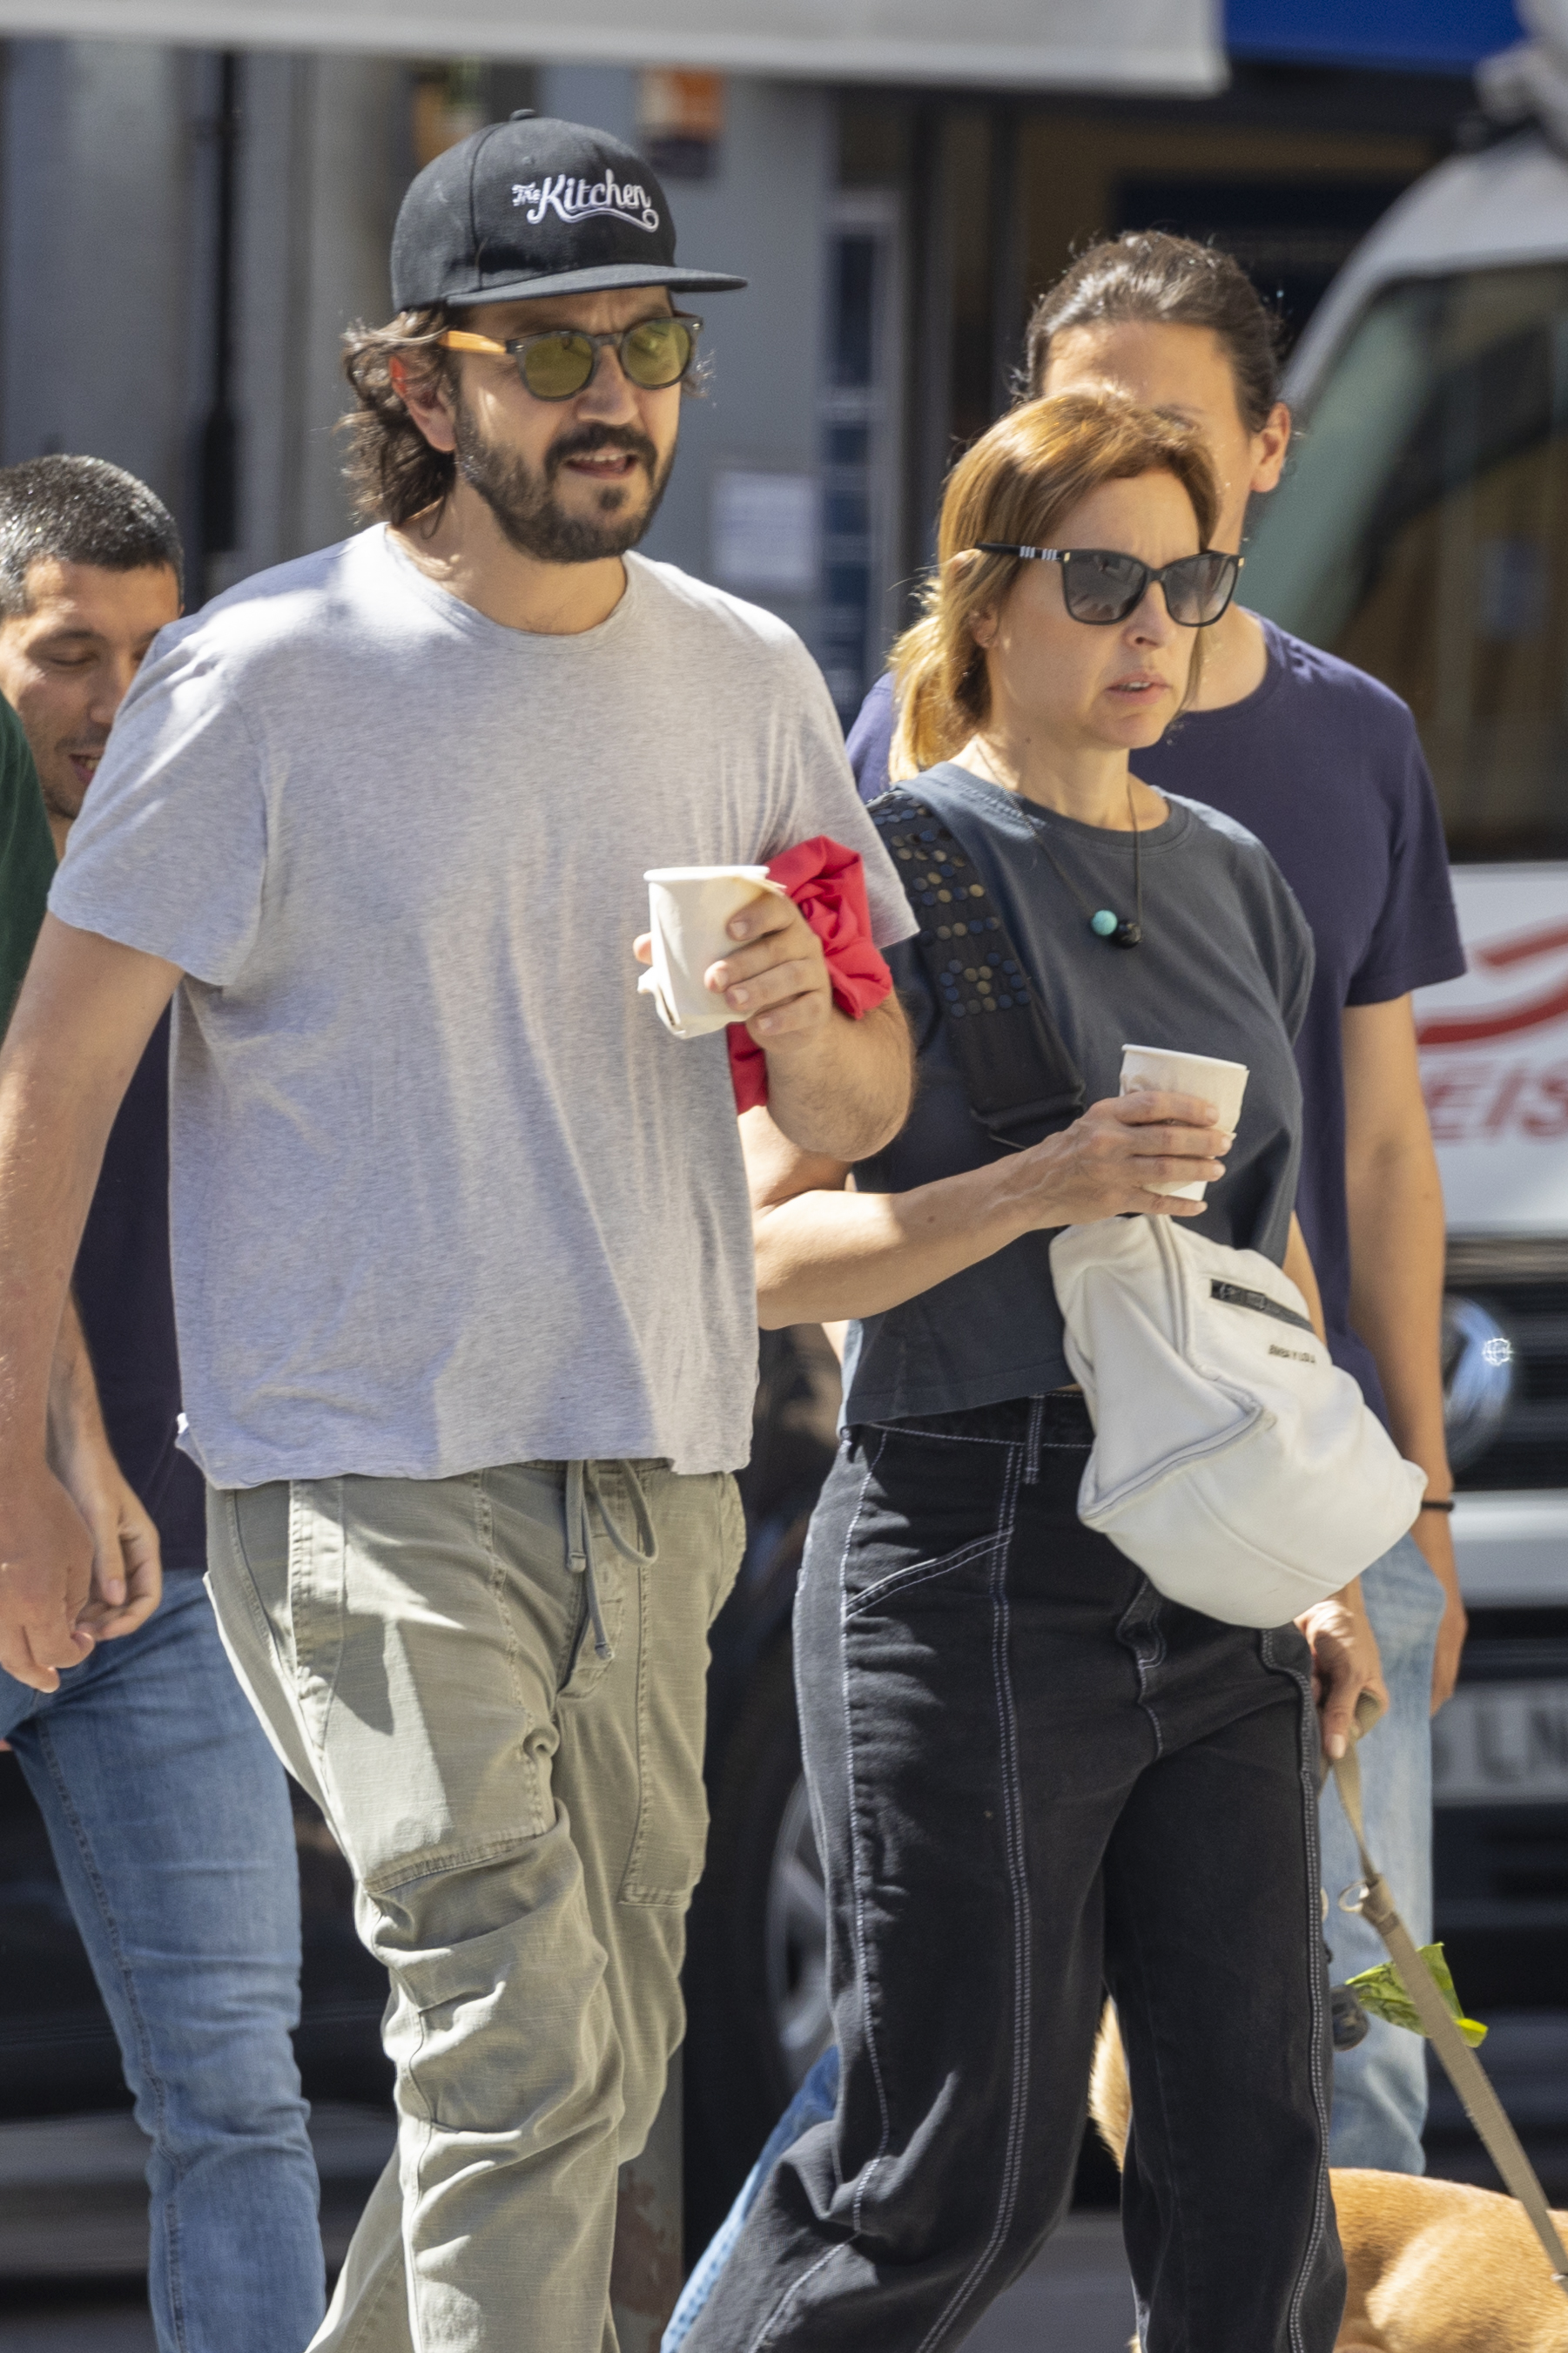 Romántico paseo. Diego Luna y su novia fueron fotografiados mientras recorrían el centro comercial de Madrid, en donde además compraron café para llevar. Su pareja llevó a su mascota de la correa. En tanto, el actor utilizó lentes de sol y gorra, buscando pasar desapercibido